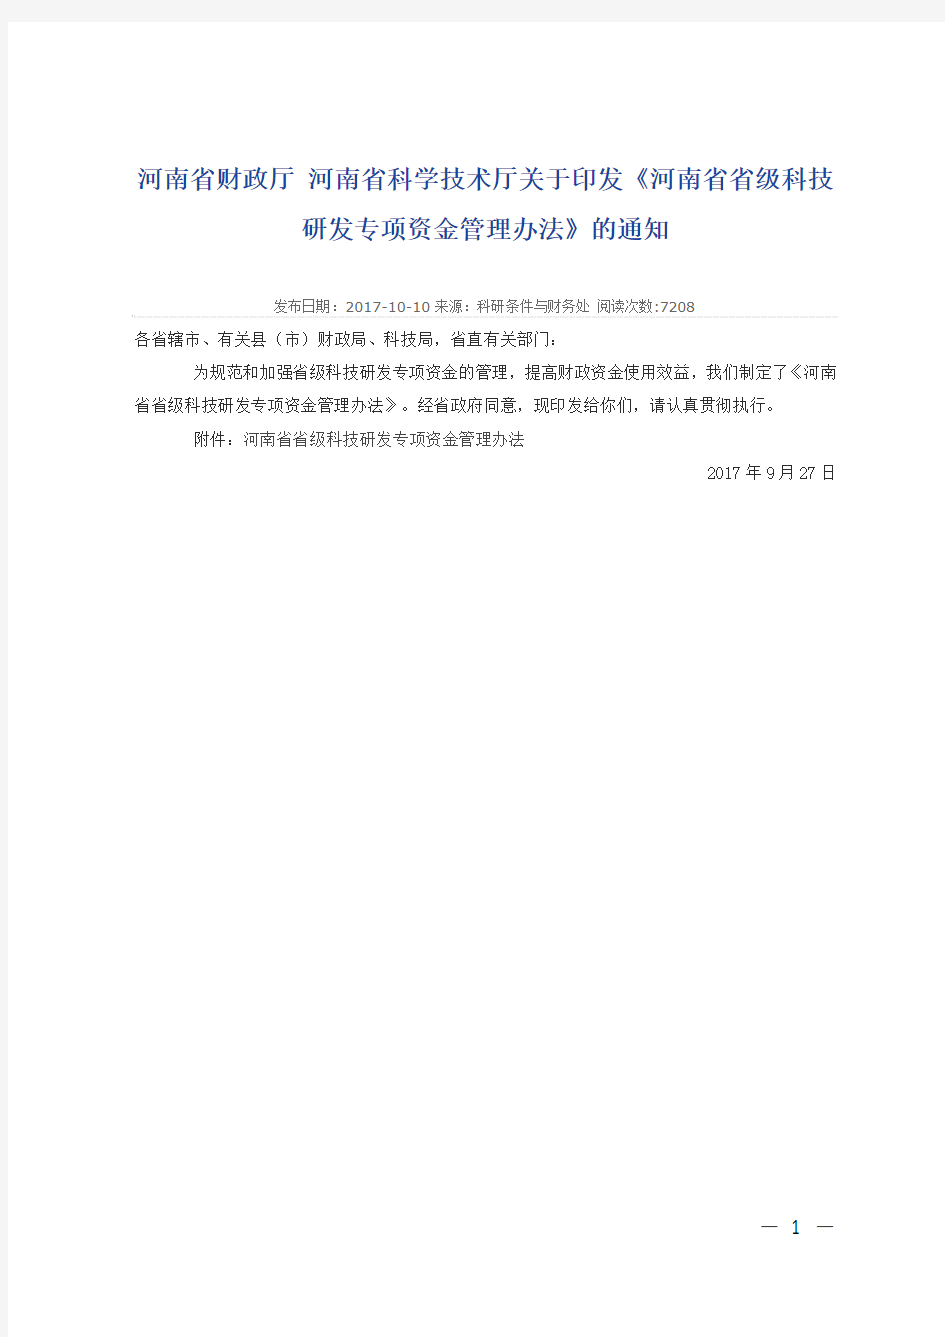 (豫财科[2017]184号)河南省省级科技研发专项资金管理办法